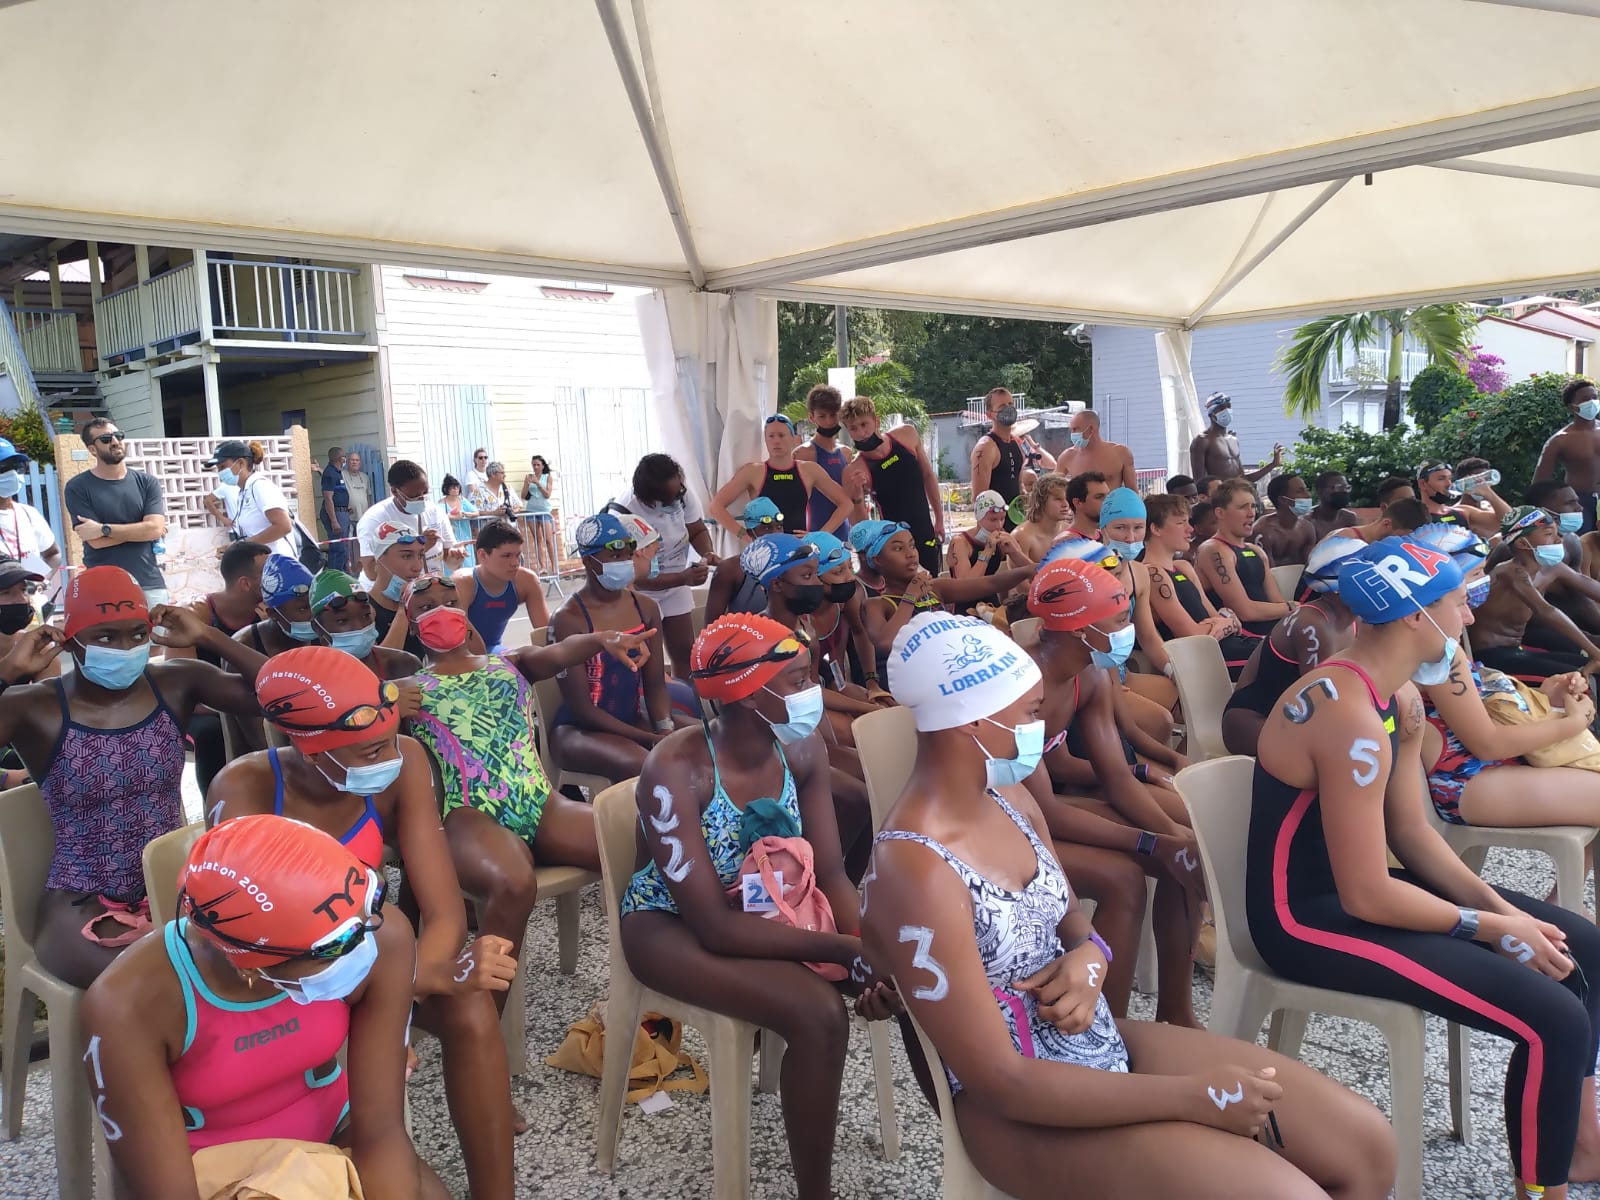     Open en eau libre de Martinique: des nageurs de l'équipe de France aux Anses d'Arlet

